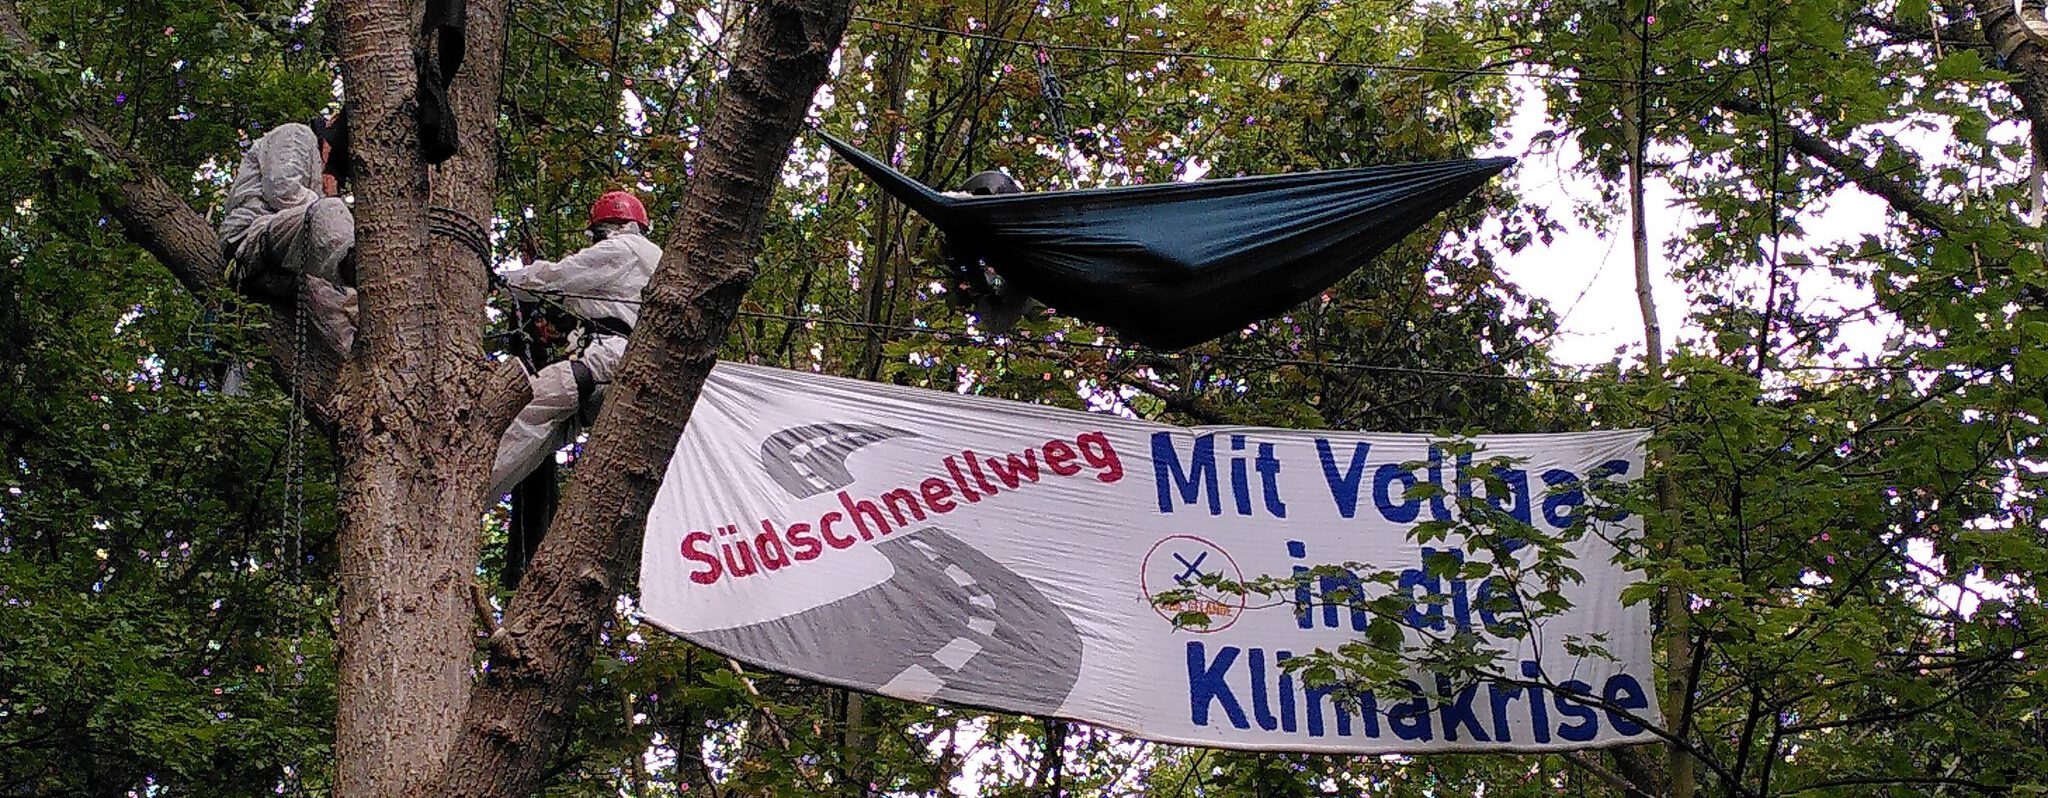 Drei Menschen in weißen Overalls besetzen Bäume. Auf einem Banner steht "Südschnellweg. Mit Vollgas in die Klimakrise"